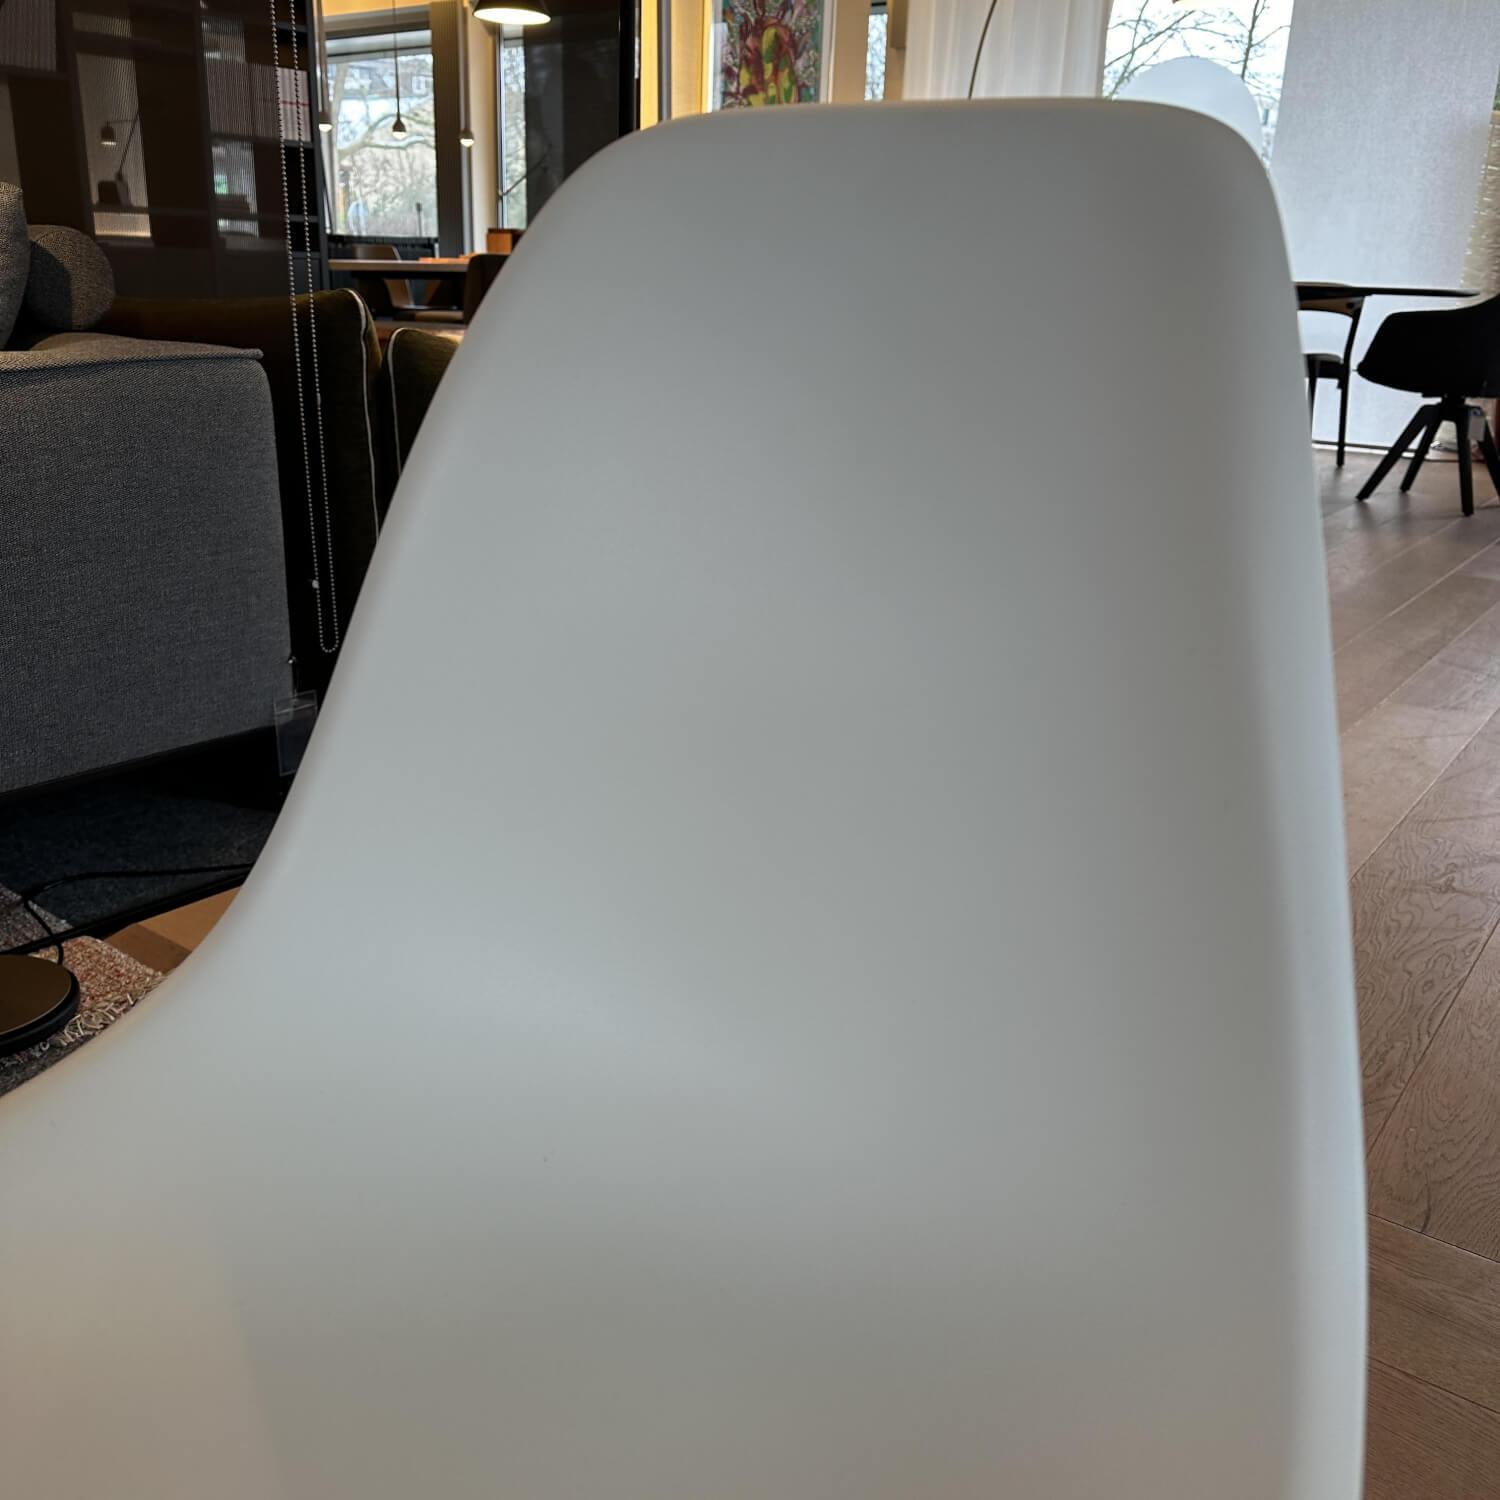 Stuhl Eames Plastic Chair Weiße Schale Ahorn Gestell Braun